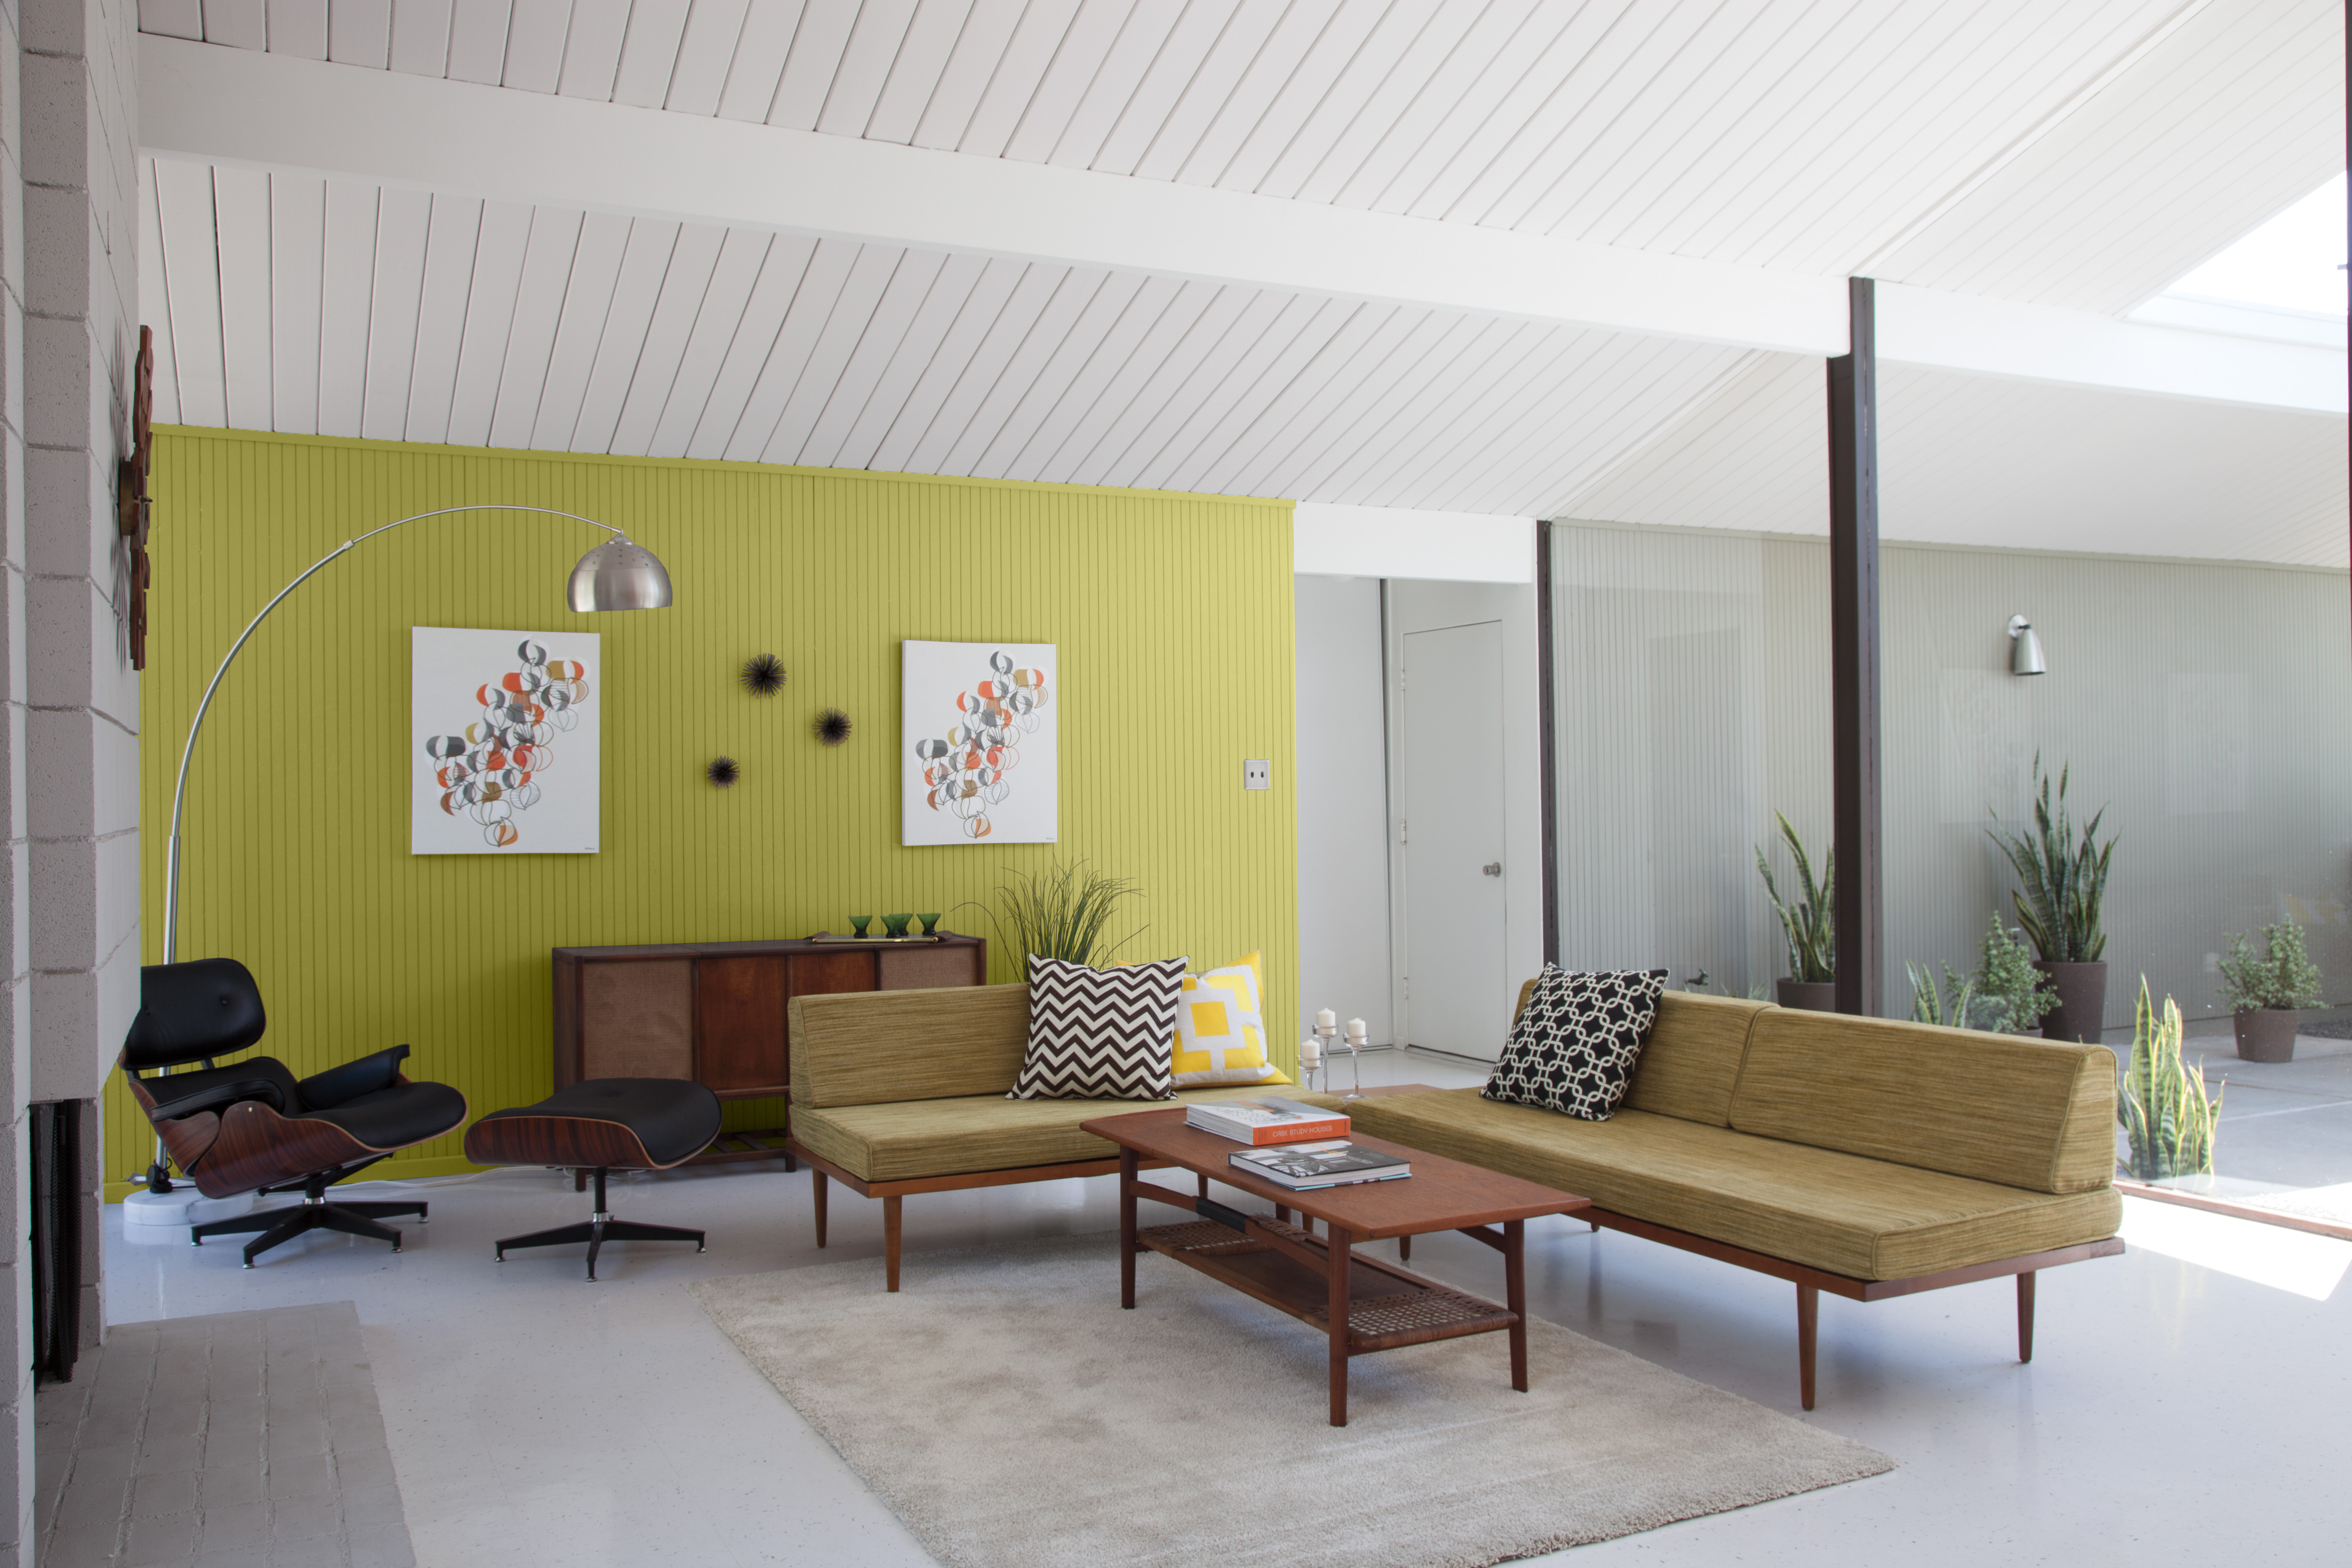 Un espace de vie moderne d’inspiration années 50 avec un mur d'accent peinturé dans un jaune-vert vibrant